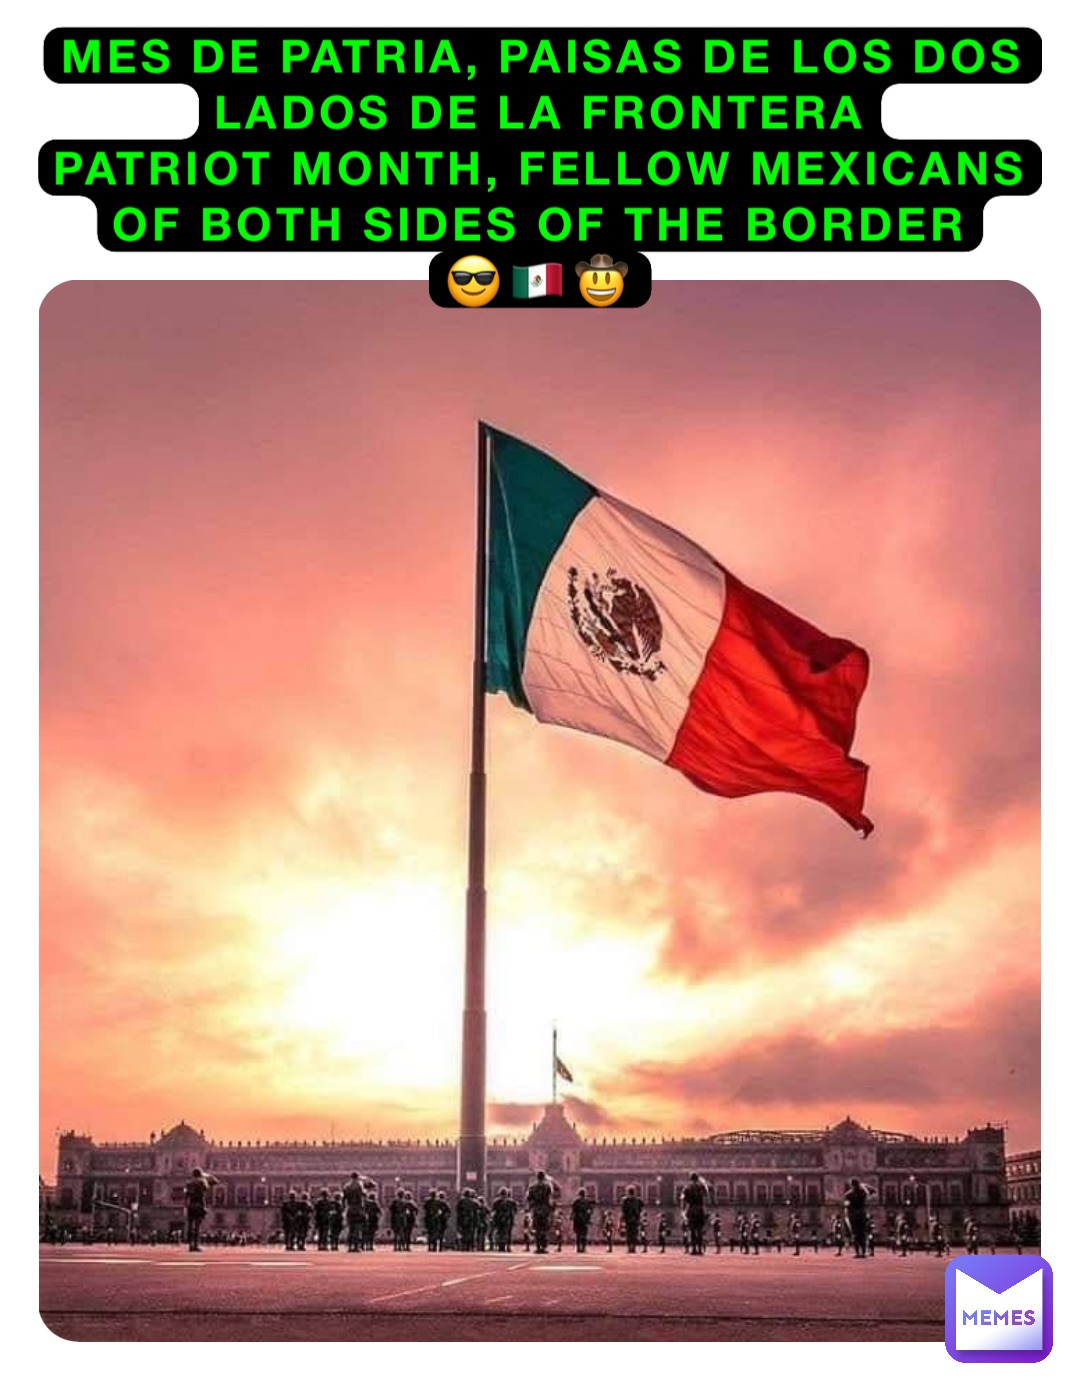 Mes de Patria, Paisas de los dos lados de la frontera
Patriot Month, fellow Mexicans of both sides of the Border
😎🇲🇽🤠